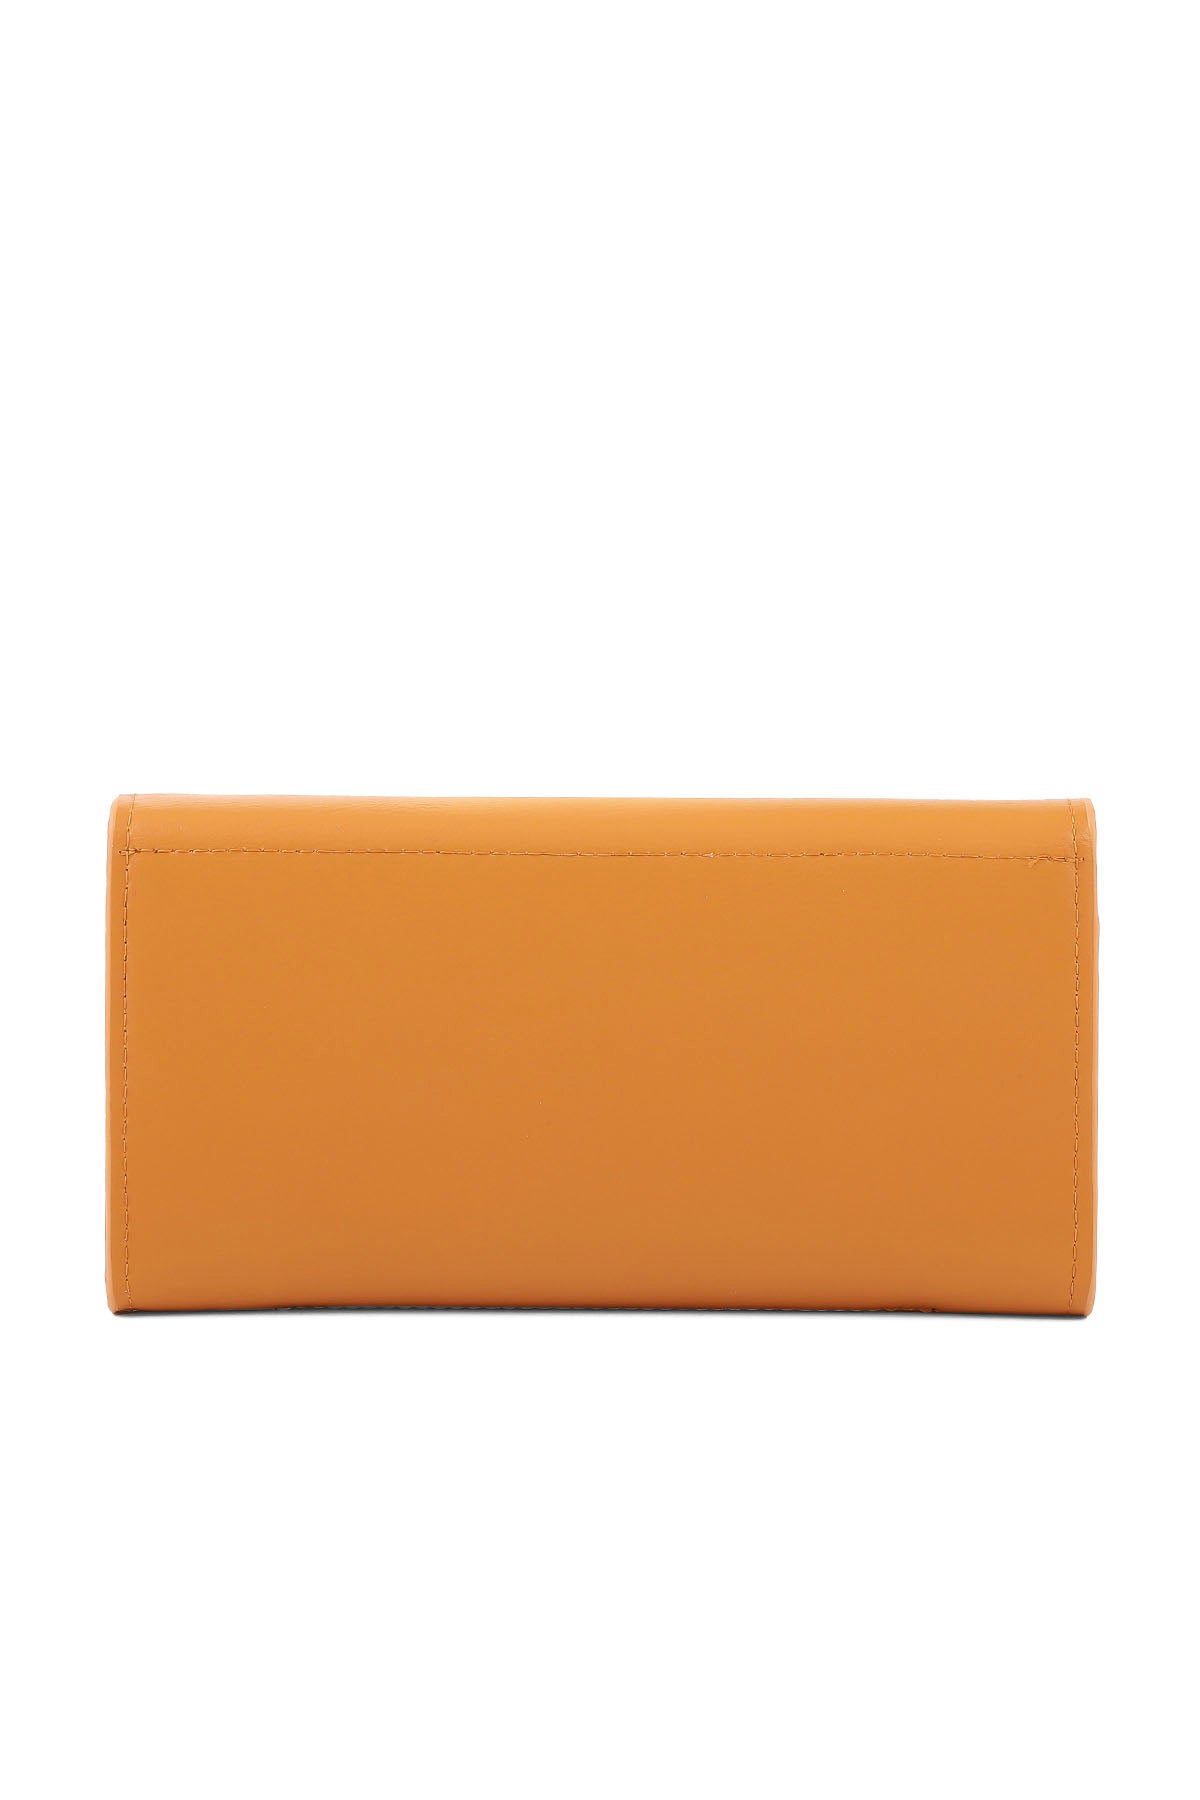 Wristlet Wallet B26033-Mustard